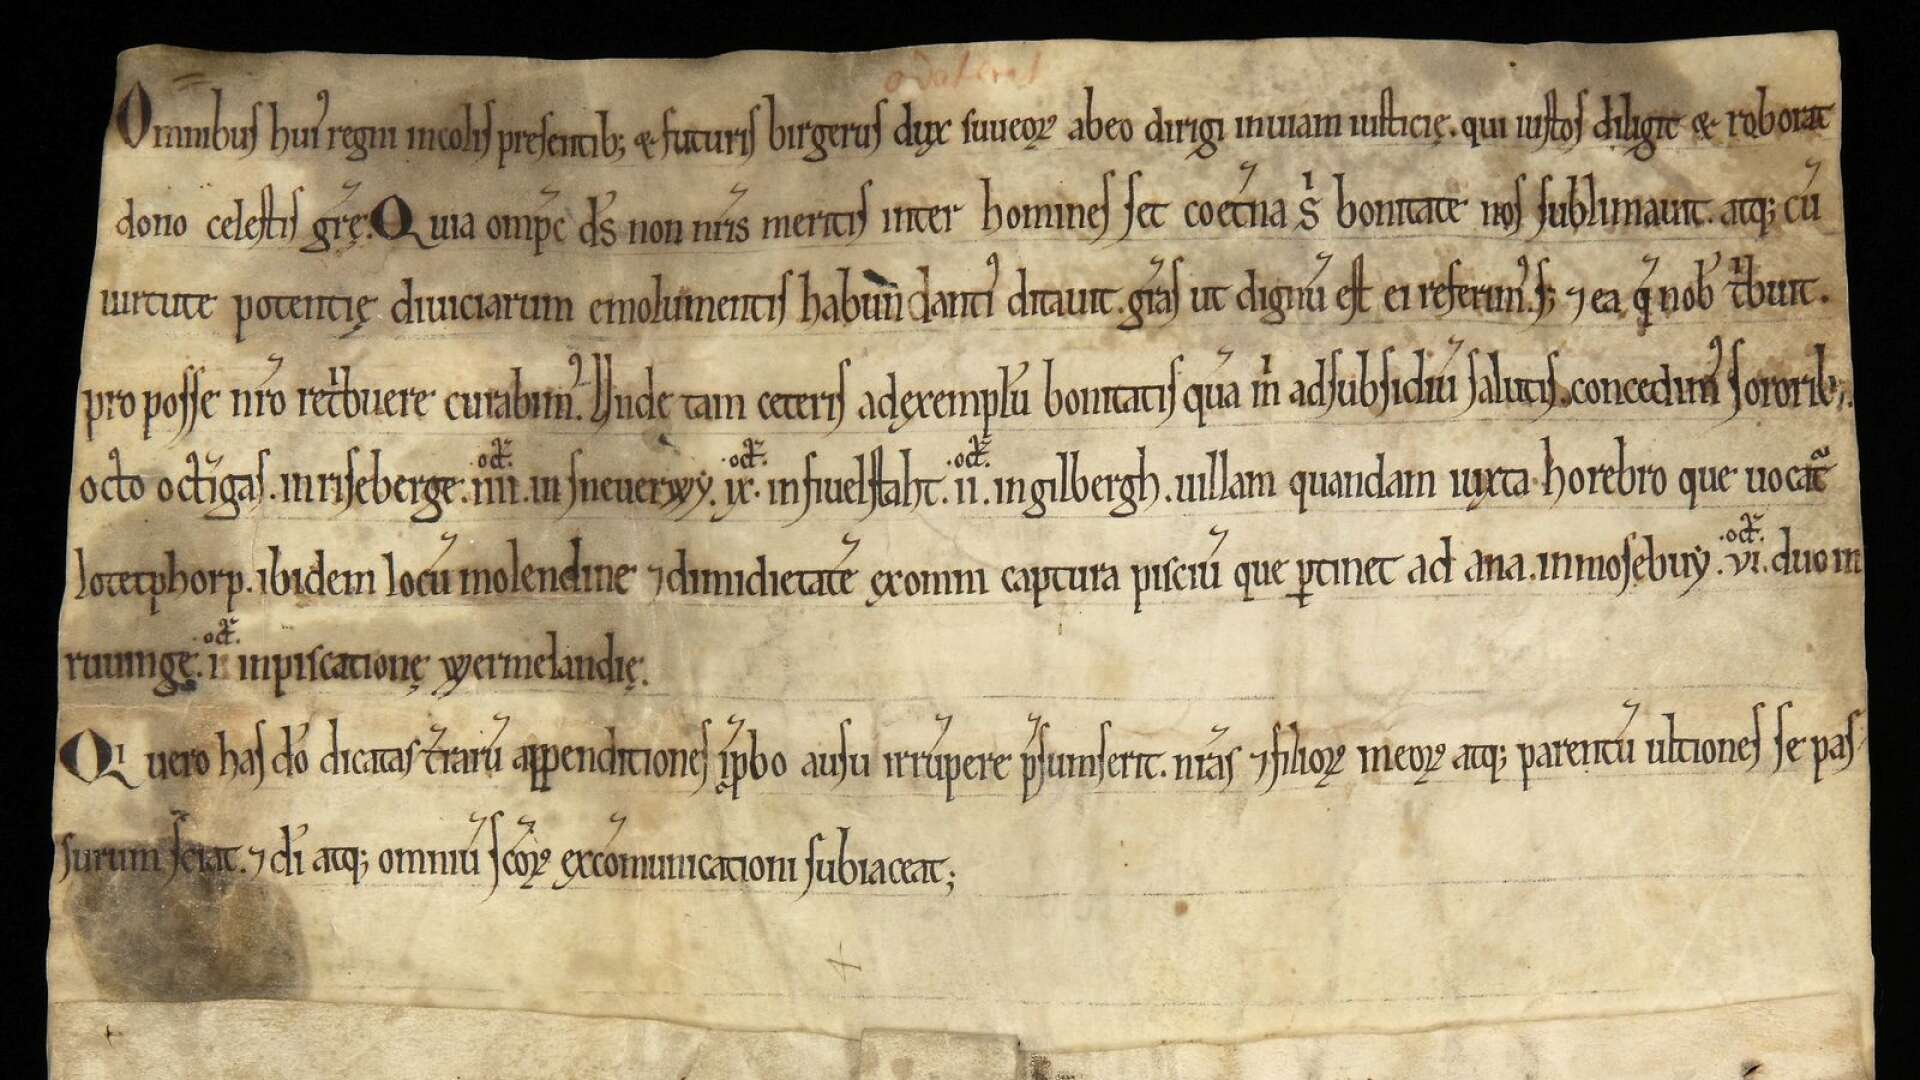 Bilden visar det äldsta medeltidsbrevet där Värmland omtalas. Brevet kan dateras till mellan åren 1180-1200. Det är skrivet av Birger Brosa som var jarl i Sverige vid den tiden och hans sigill hänger under brevet. Birger Brosa meddelar i brevet att han ger en del av fisket i Värmland till Riseberga kloster. Fisket låg i Klarälven vid Deje. I brevet ger han också gårdar utanför Värmland till samma kloster.